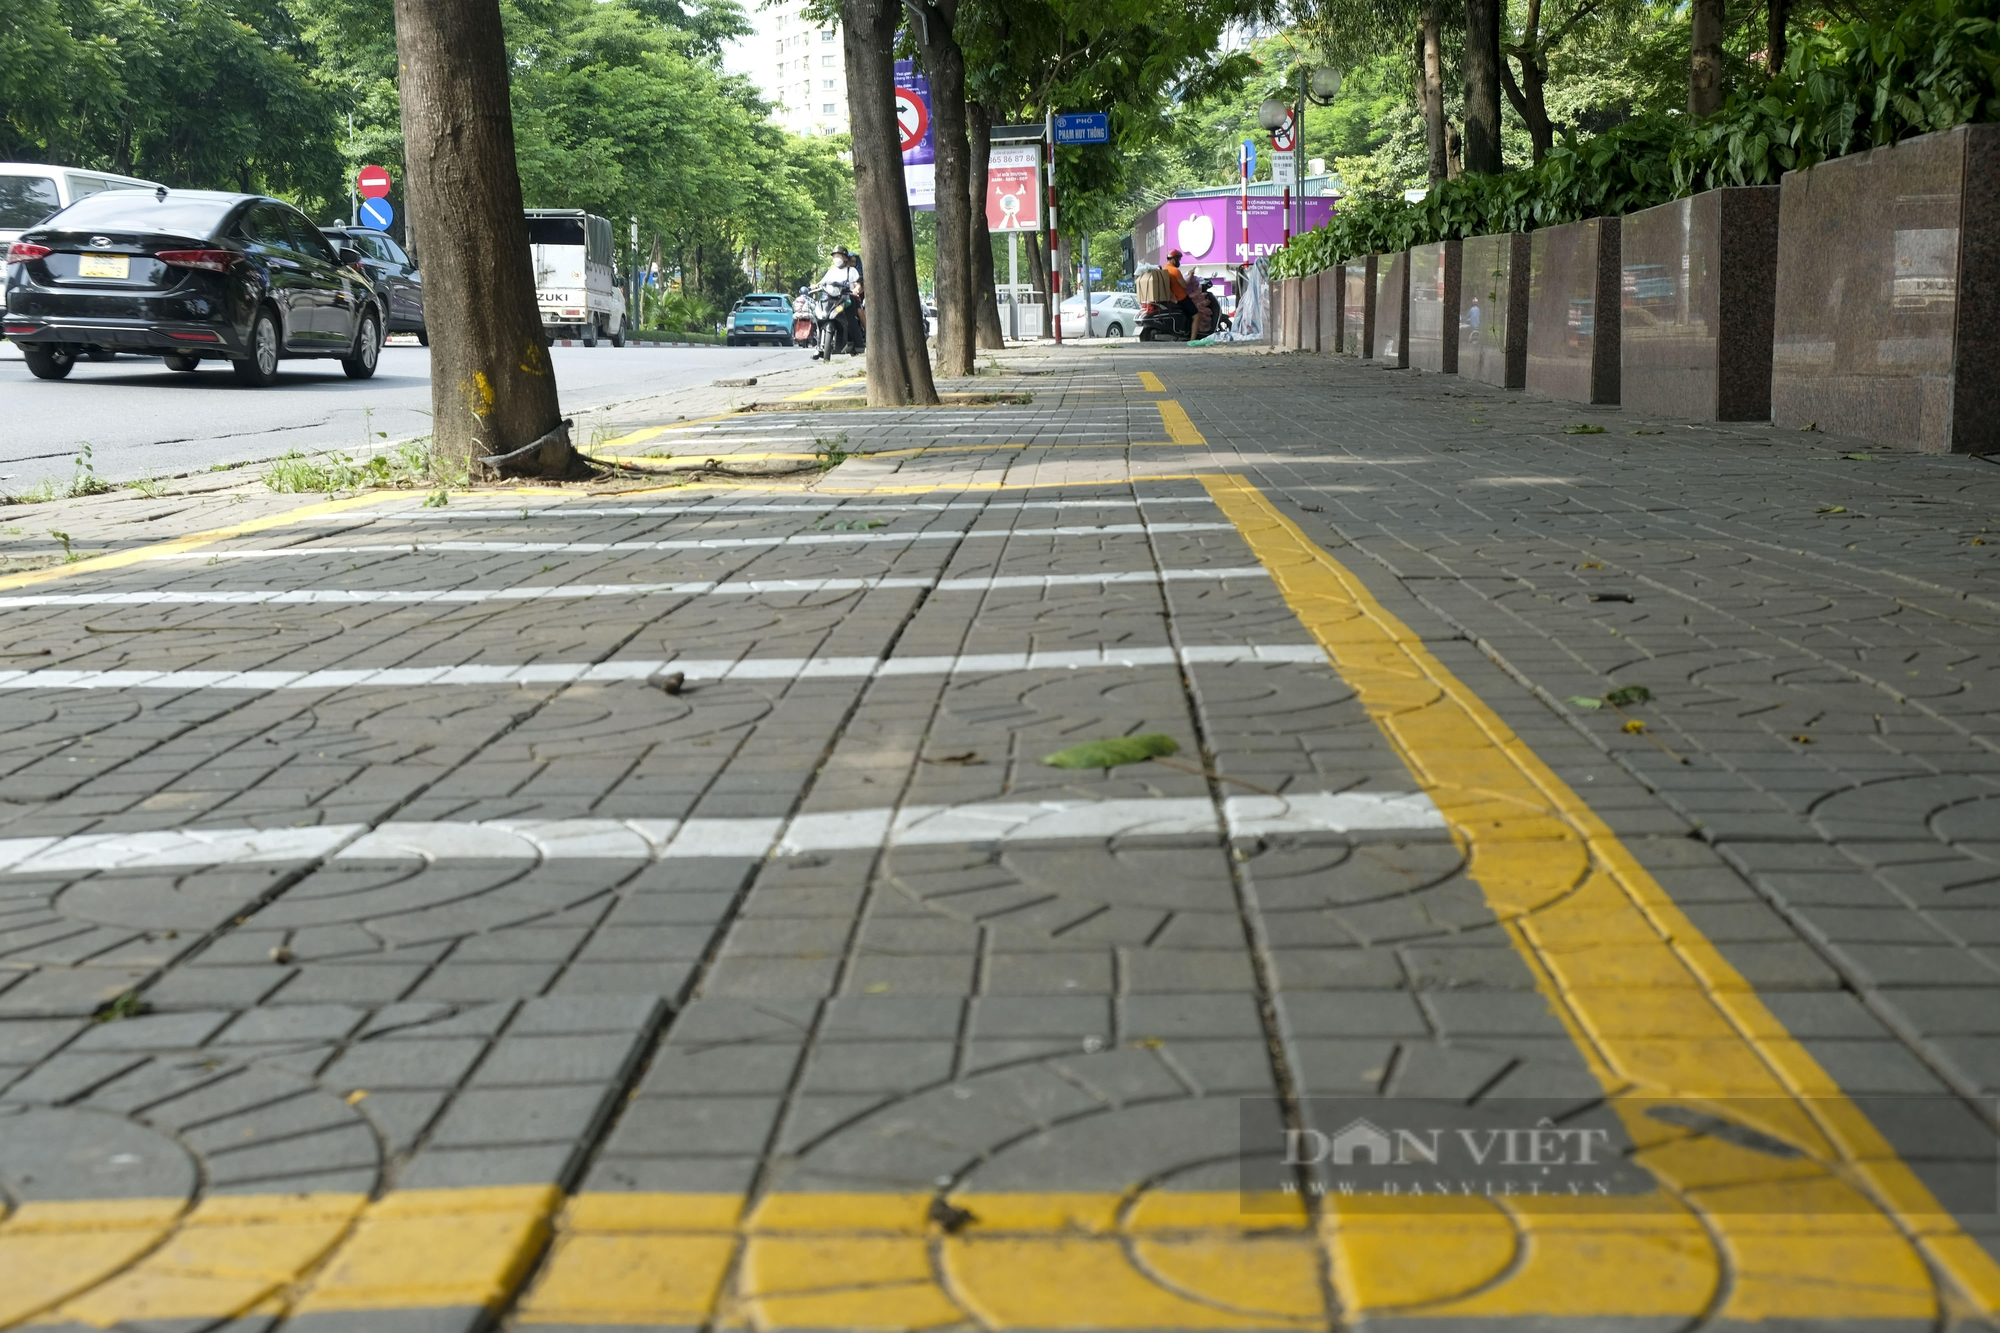 Dự án trạm xe đạp công cộng tại Hà Nội “lỡ hẹn”, chưa thể đưa vào hoạt động - Ảnh 5.